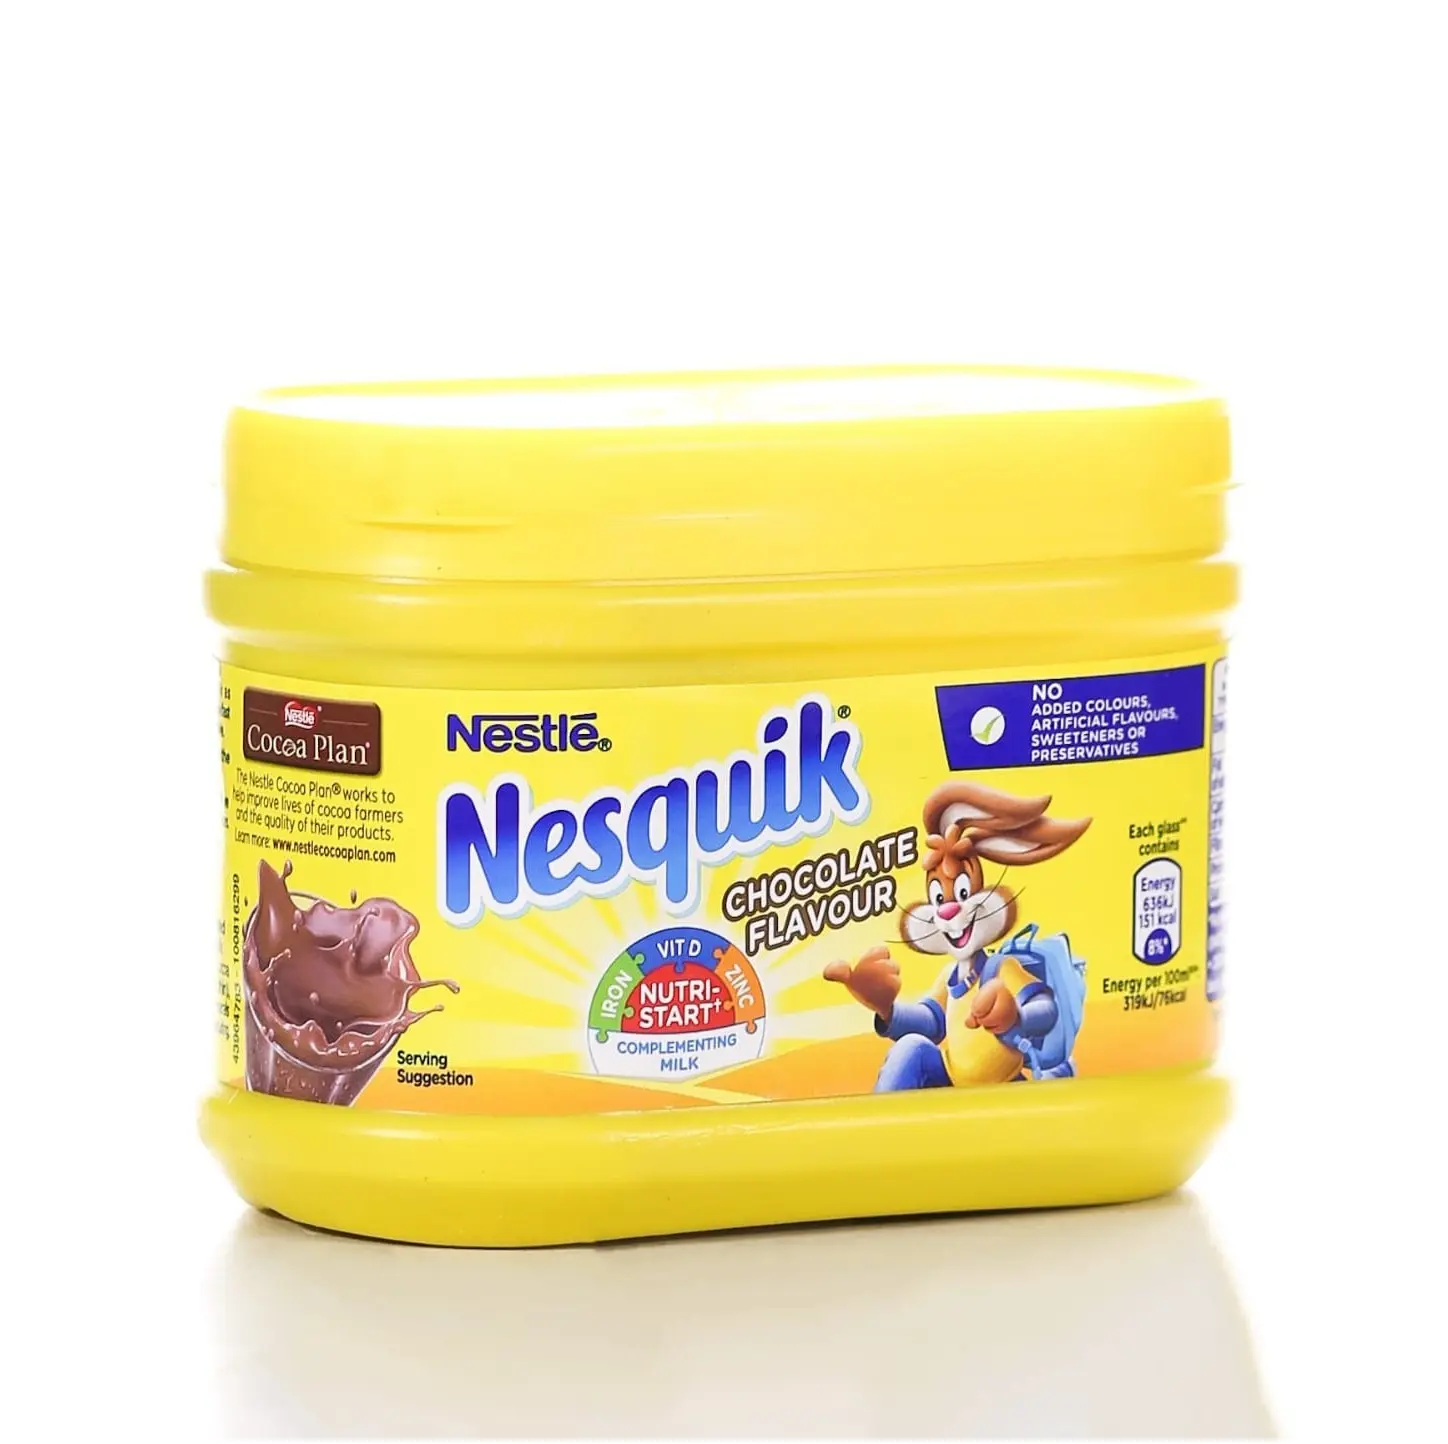 Höchste Qualität bester Preis direkte Lieferung Nestlé Nesquik Softausschokoladepulver Großhandel frischer Lagerbestand für Export verfügbar